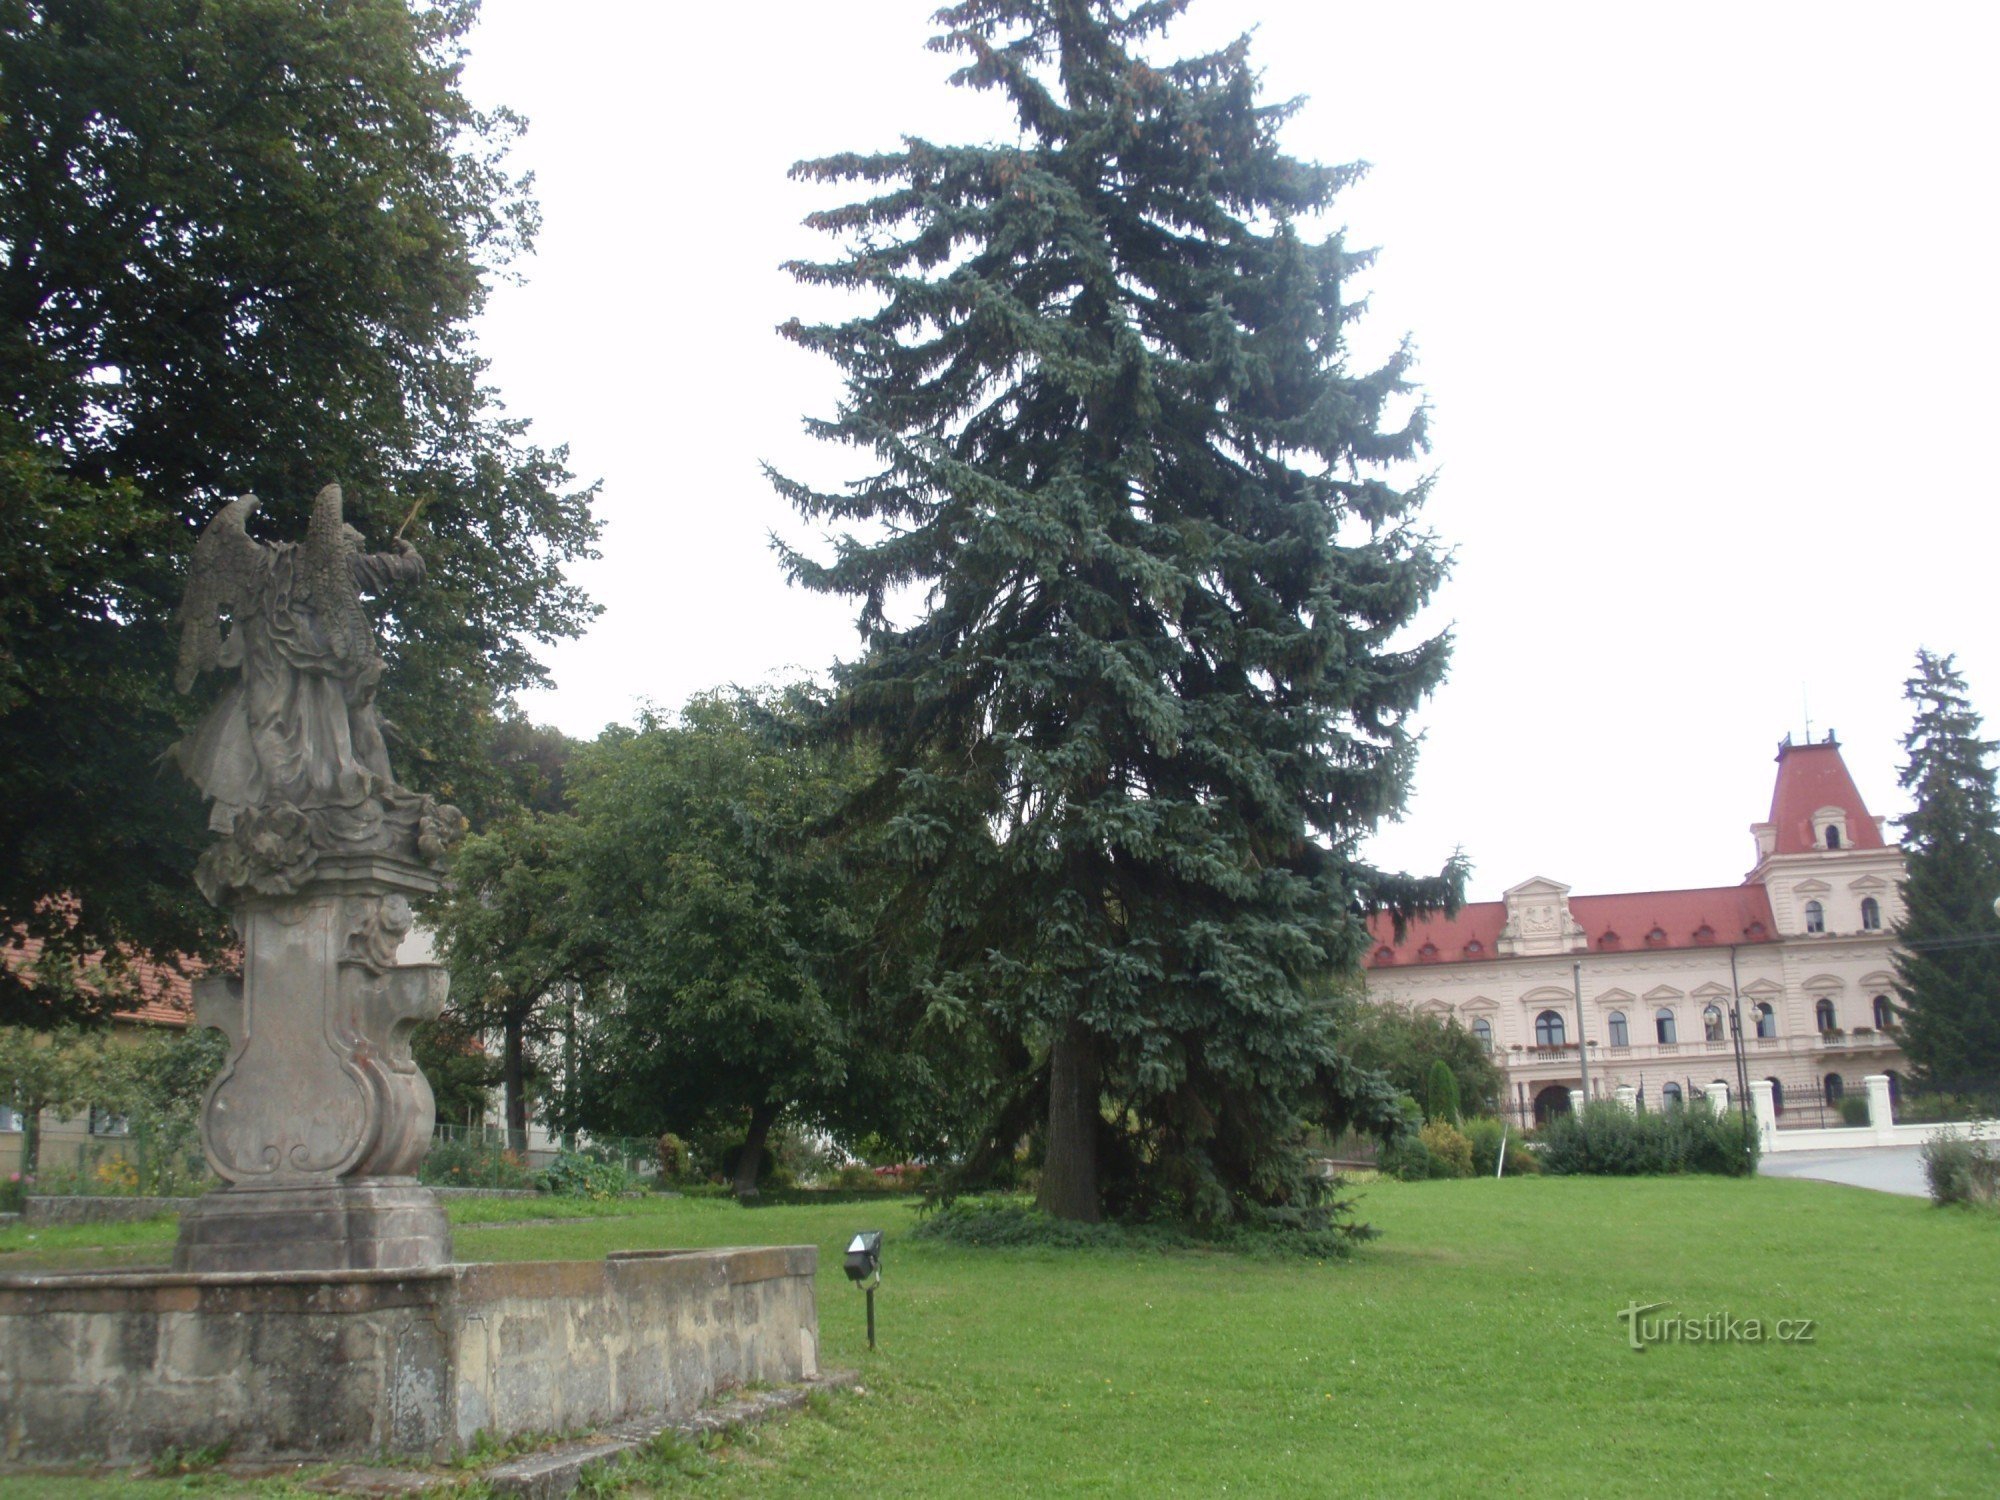 Statue of St. Jan Nepomucký in Šebetov